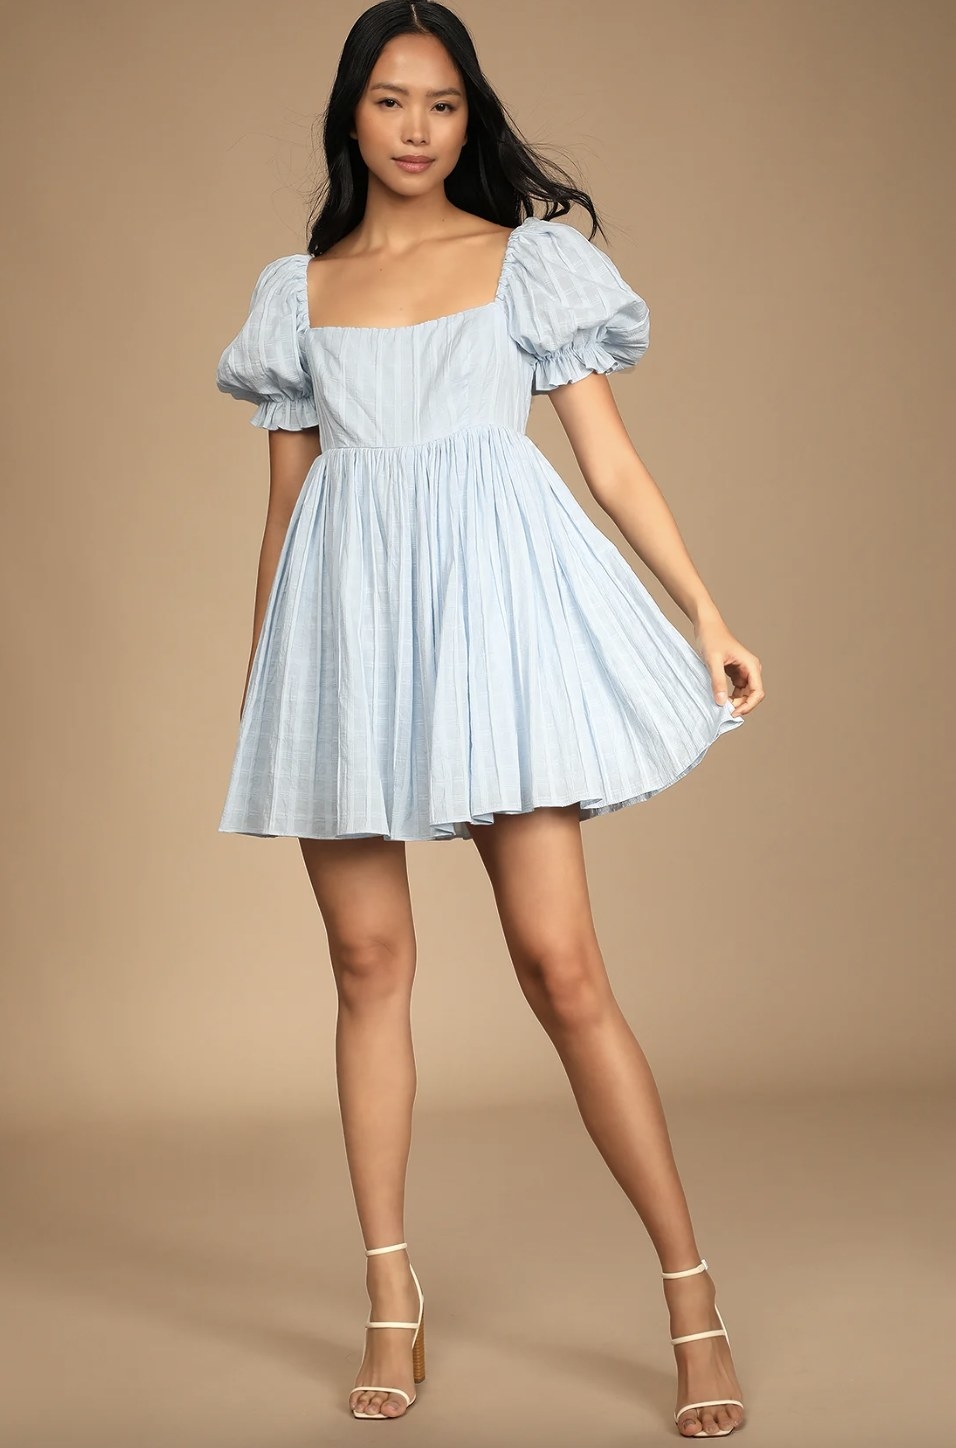 a model wearing the dress in light blue